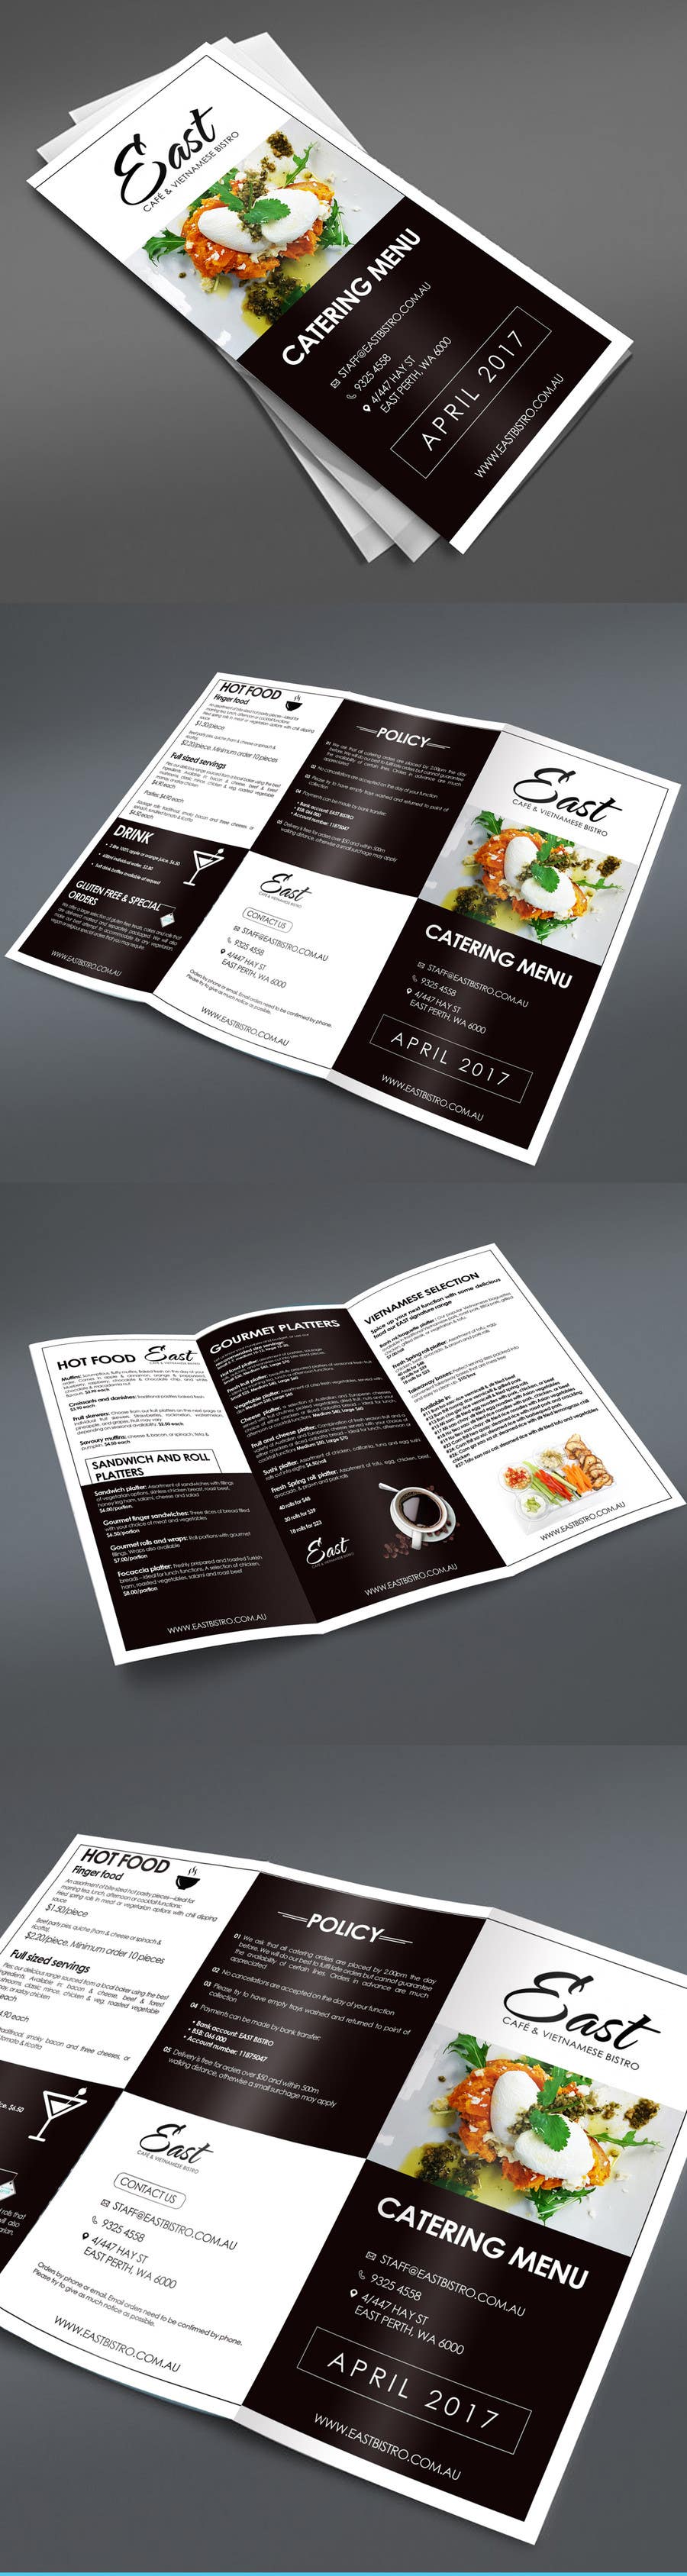 Kilpailutyö #30 kilpailussa                                                 Design a brochure / redesign my catering menu
                                            